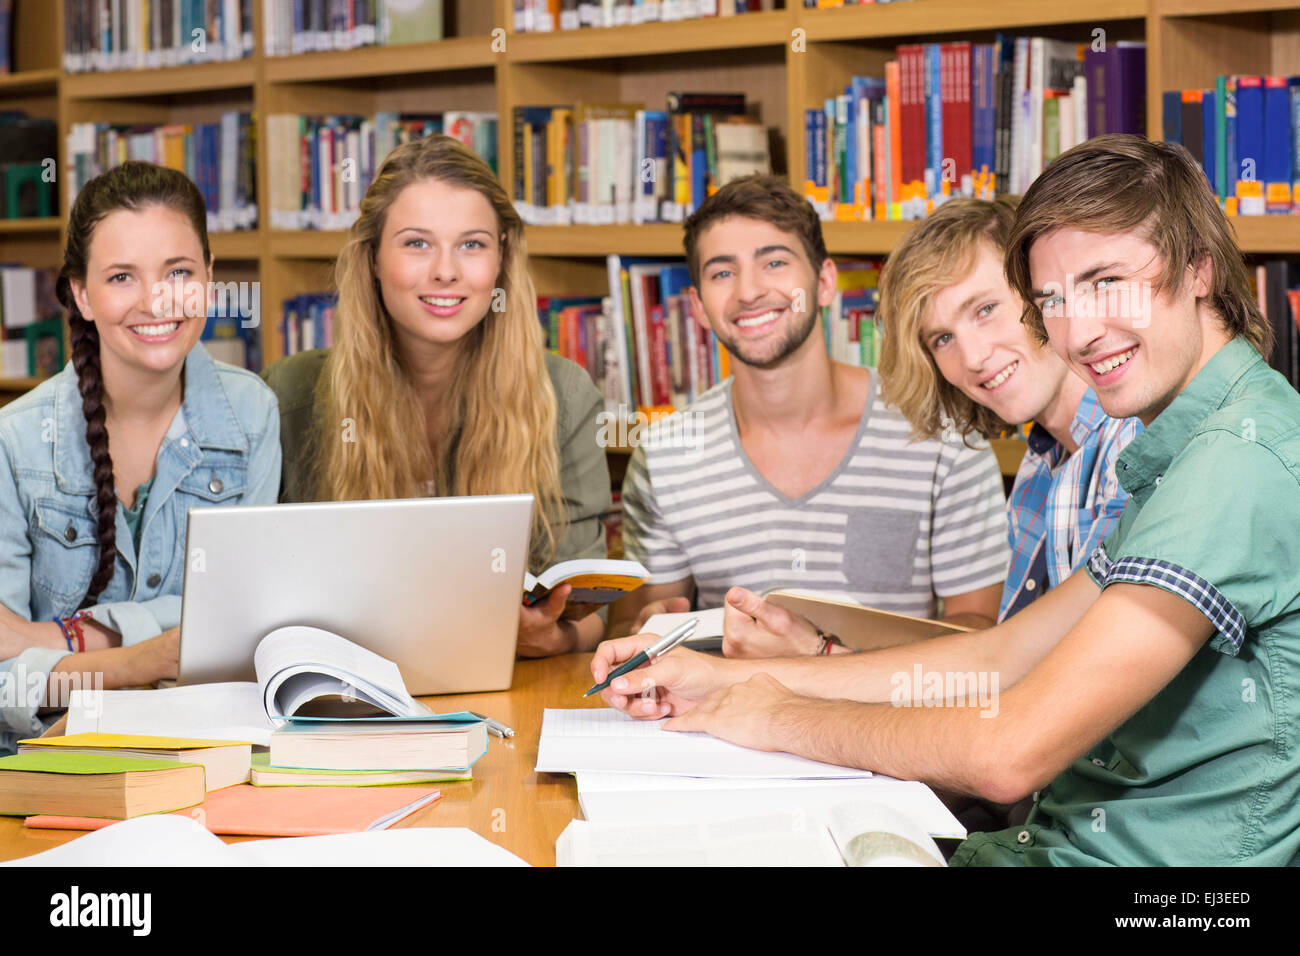 Университеты реализуют. Студенты в библиотеке. Студенты в библиотеке фото. Студенты колледжа это группа. Педагог и студент.